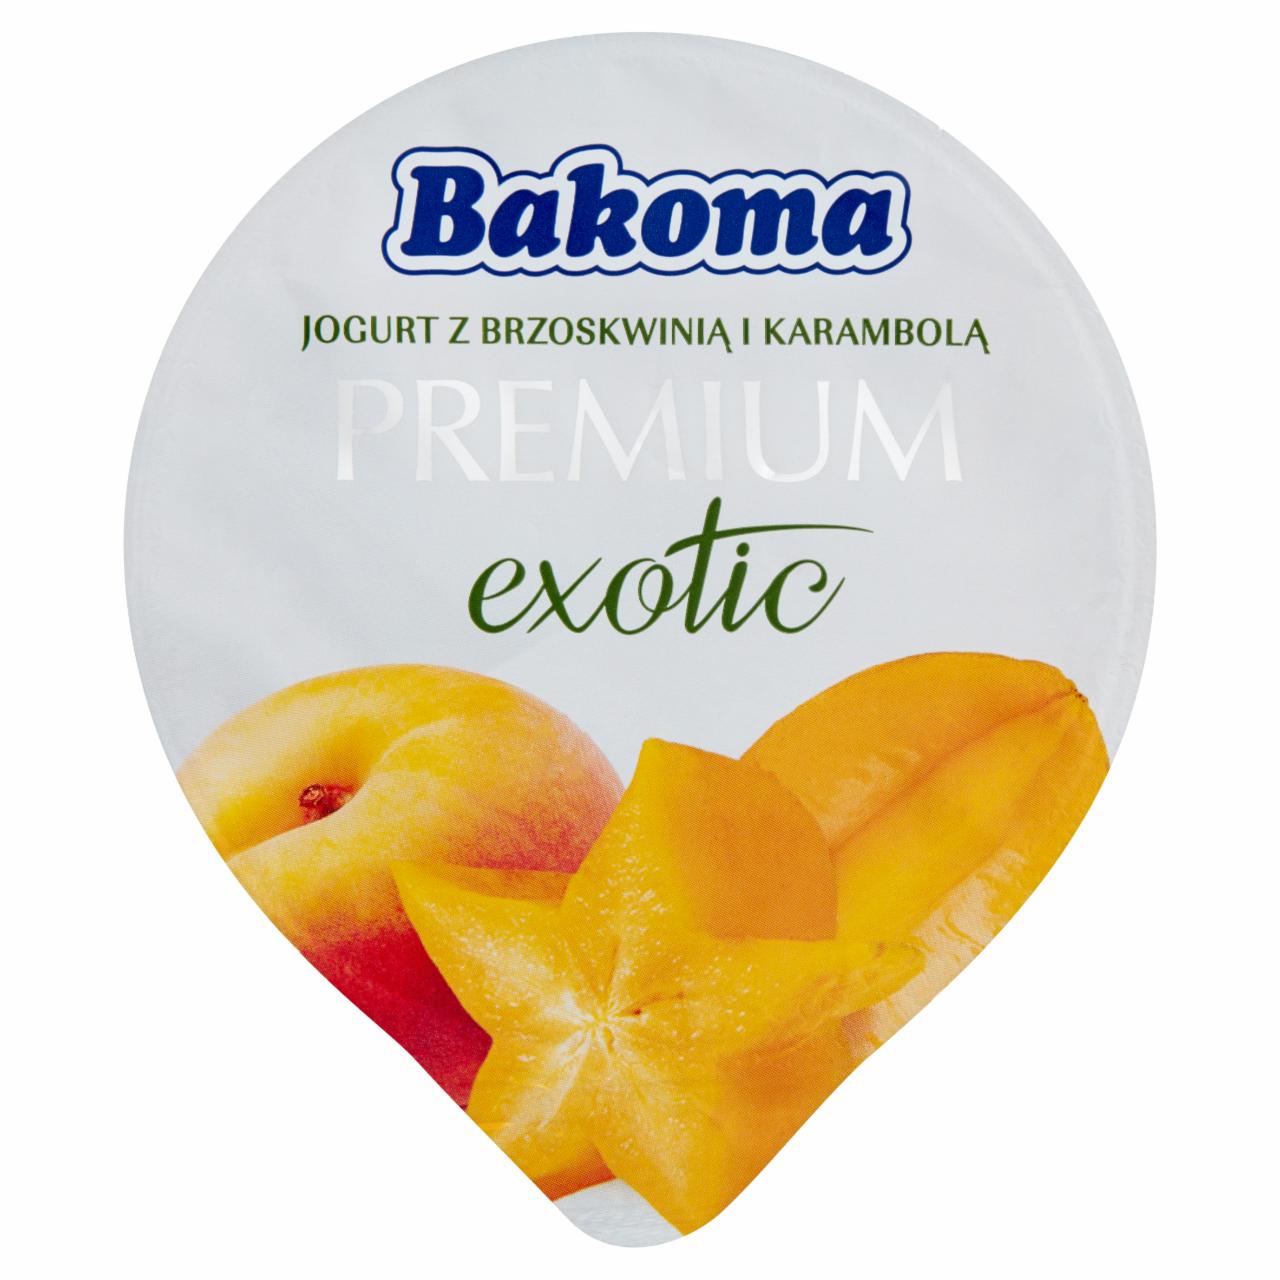 Zdjęcia - Bakoma Premium Exotic Jogurt z brzoskwinią i karambolą 140 g